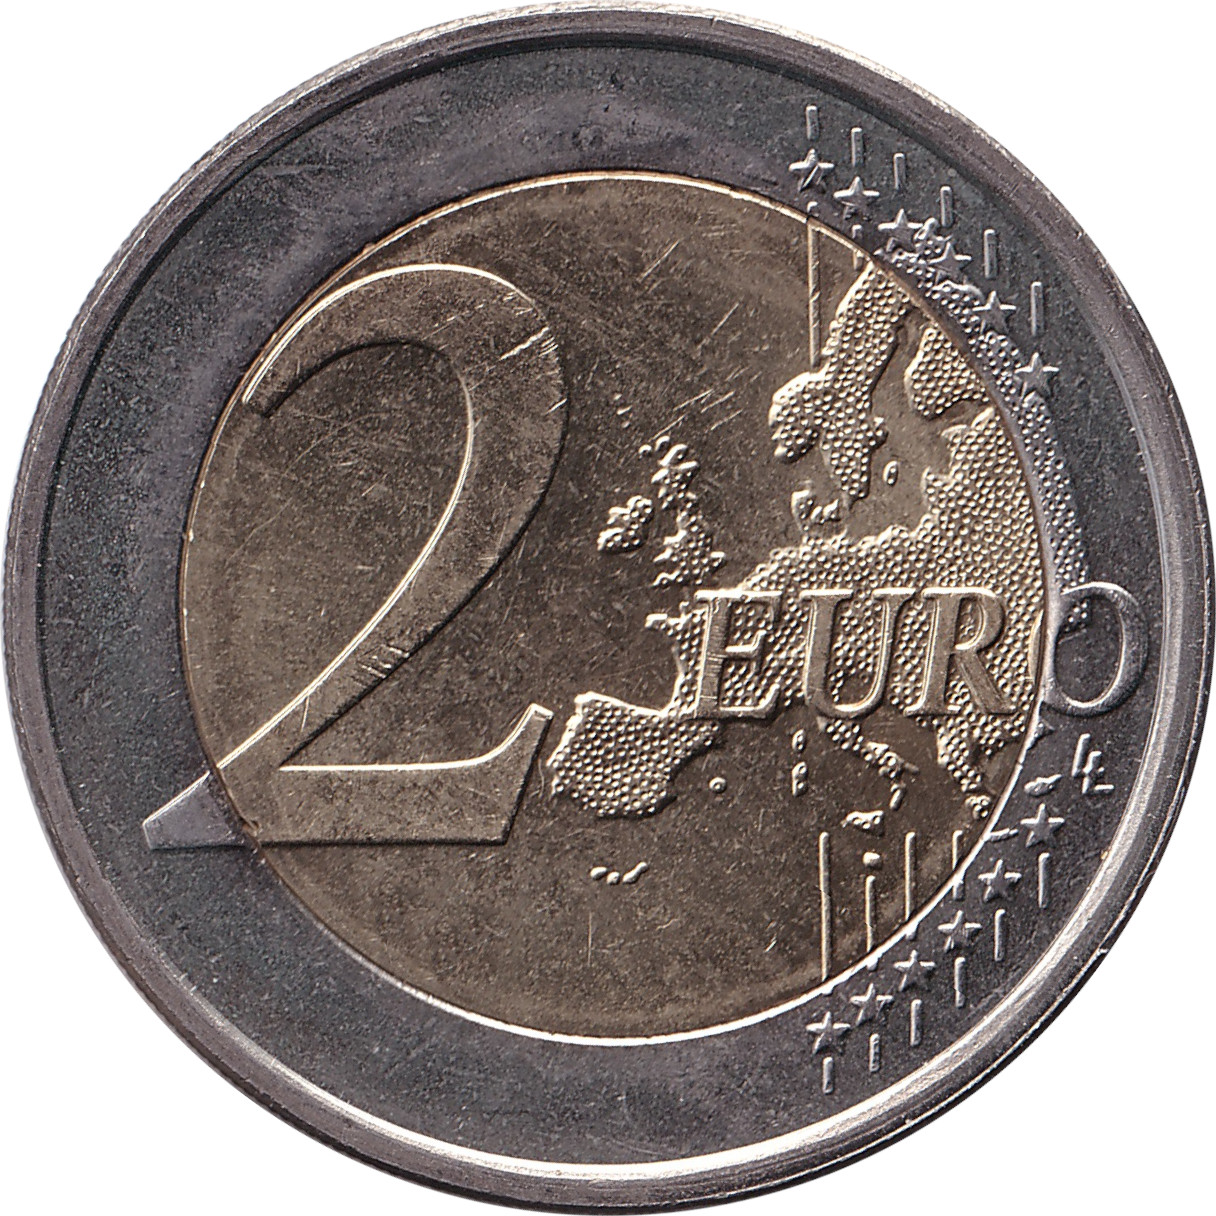 2 euro - Helene Schjerfbeck